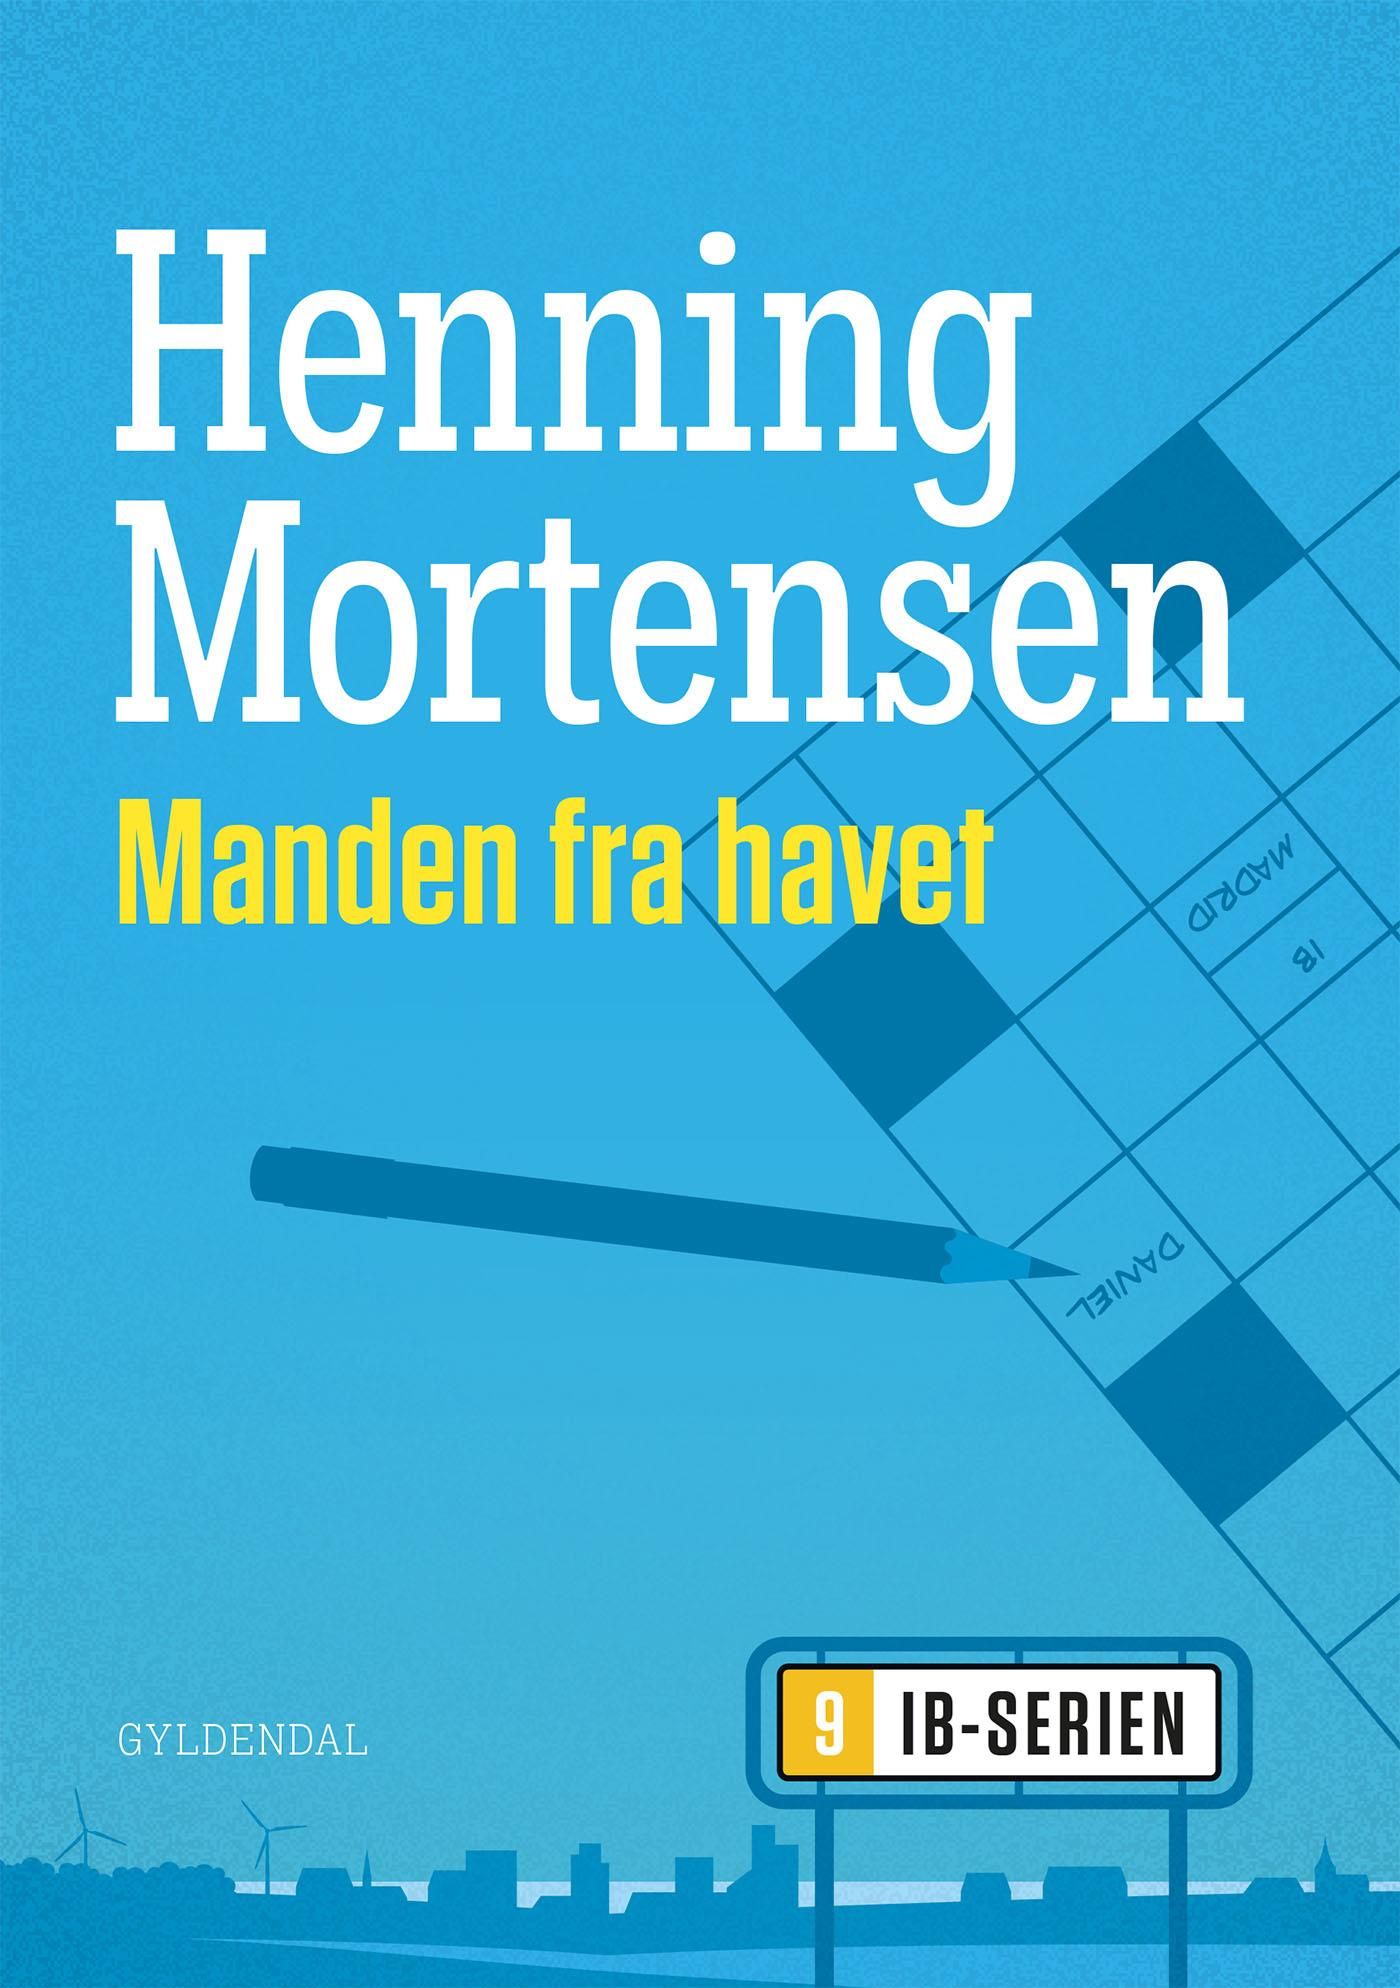 Manden fra havet, e-bog af Henning Mortensen